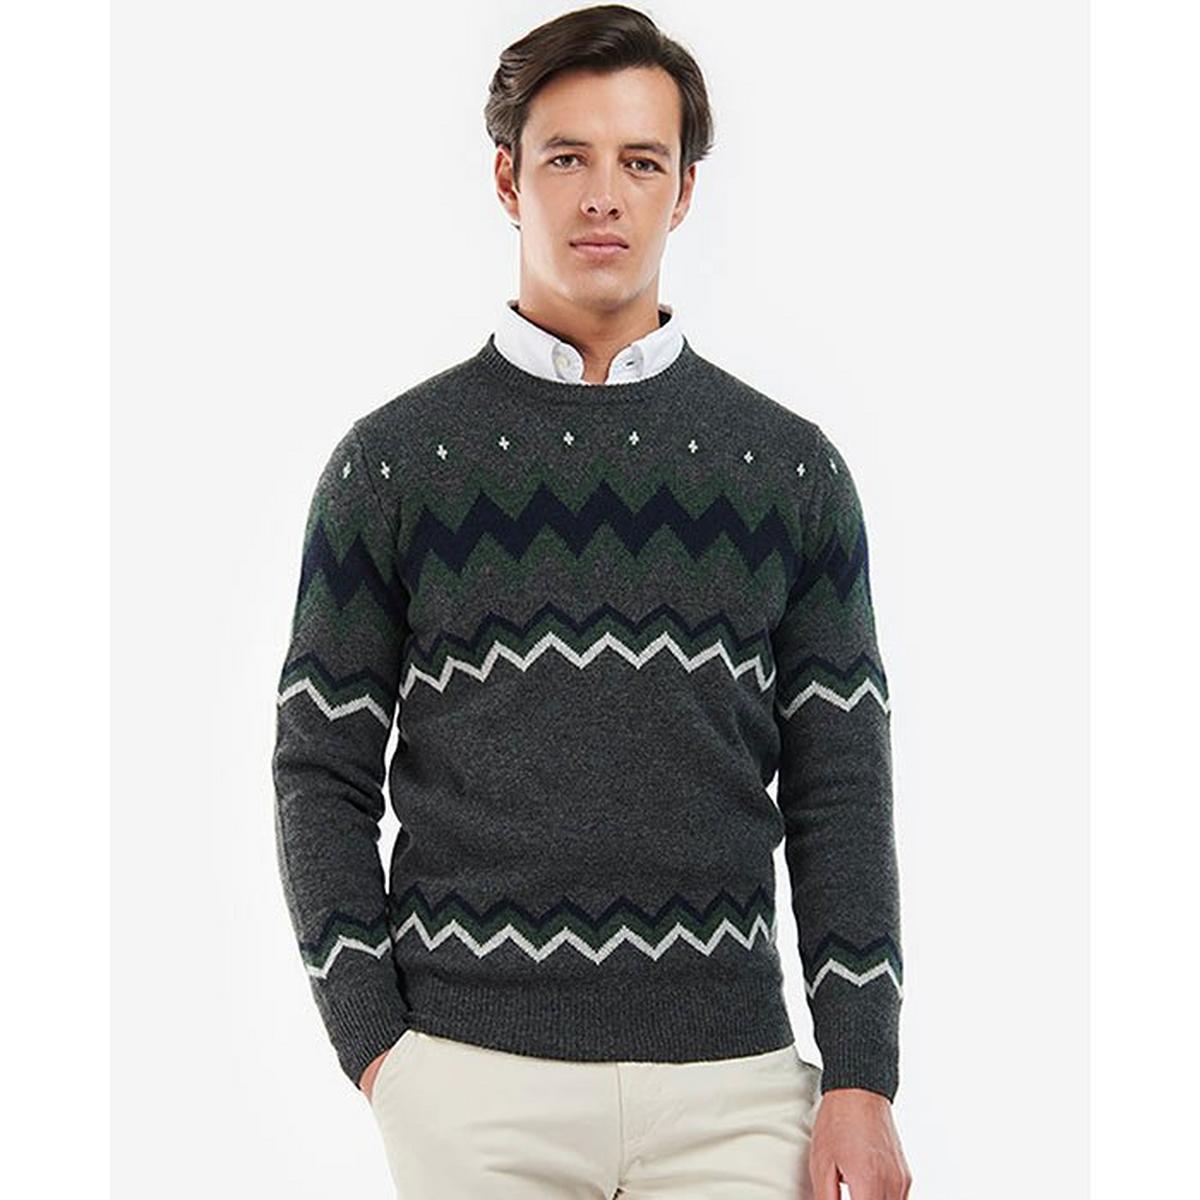 Men's Regis Fair Isle Crew Sweater